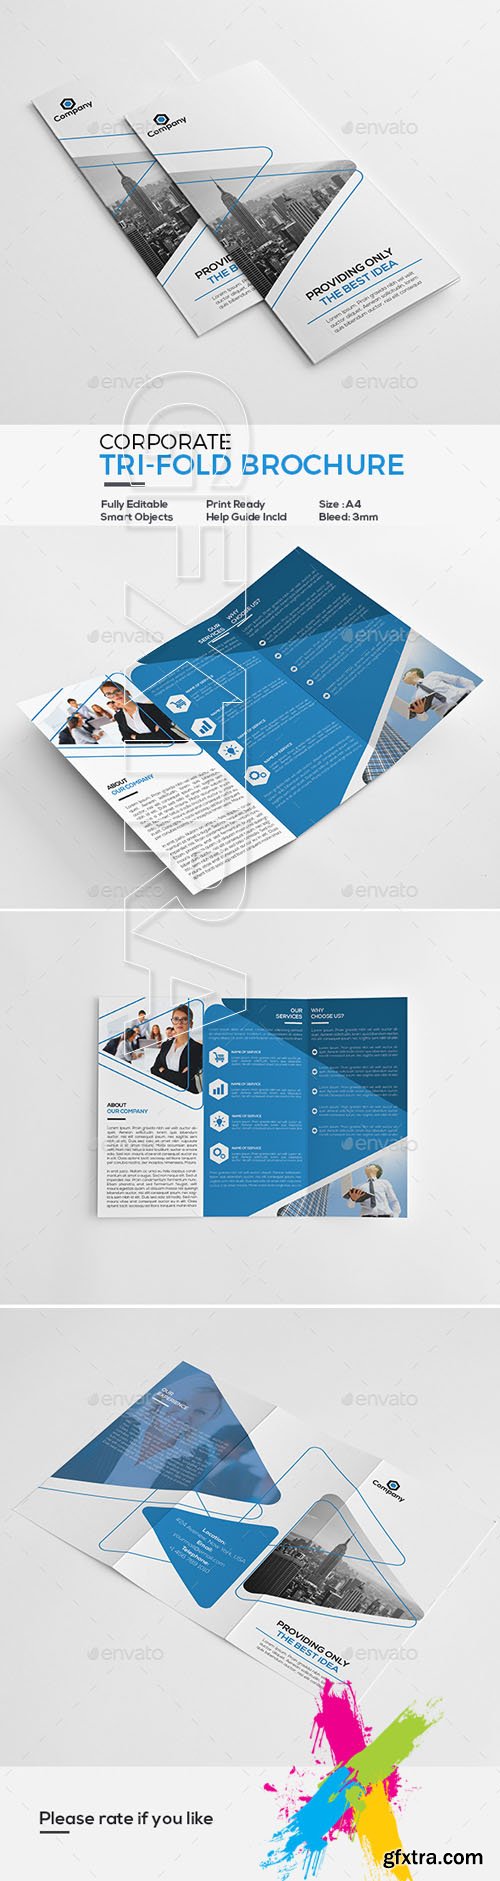 Graphicriver - Corporate Tri-Fold Brochure 20172520